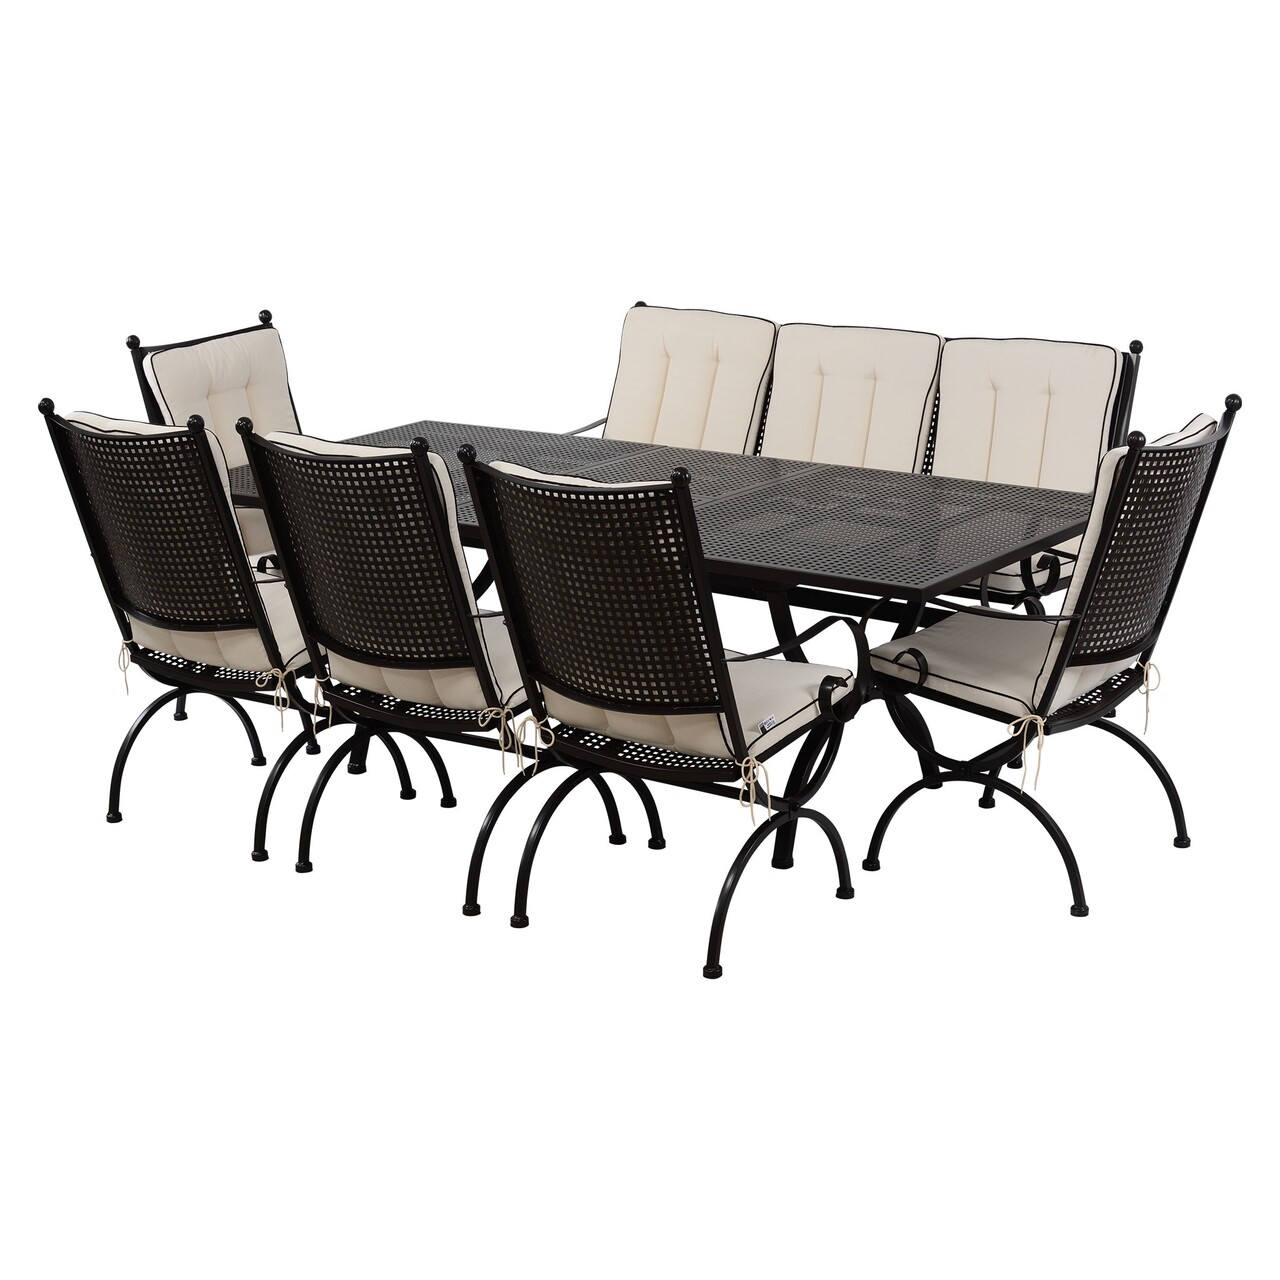 Maison romeo elegance 5 db szék, háromszemélyes pad és kihúzható asztal, acél, fekete/fehér